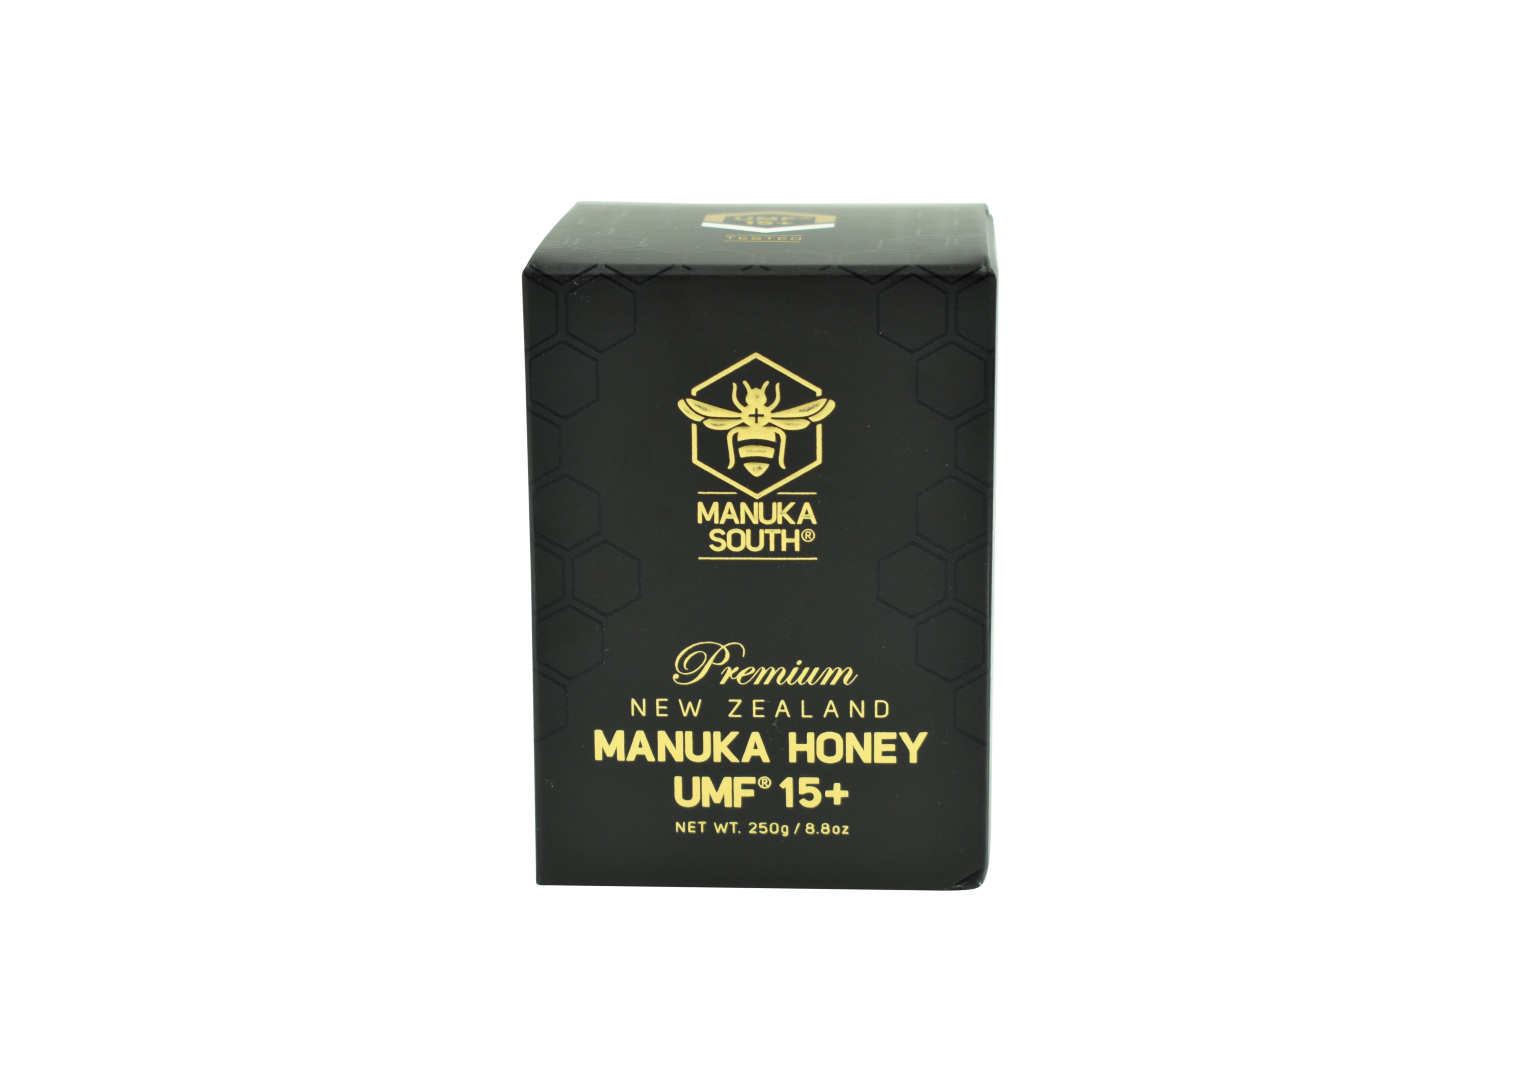 Manuka South Manuka Honey UMF 15+